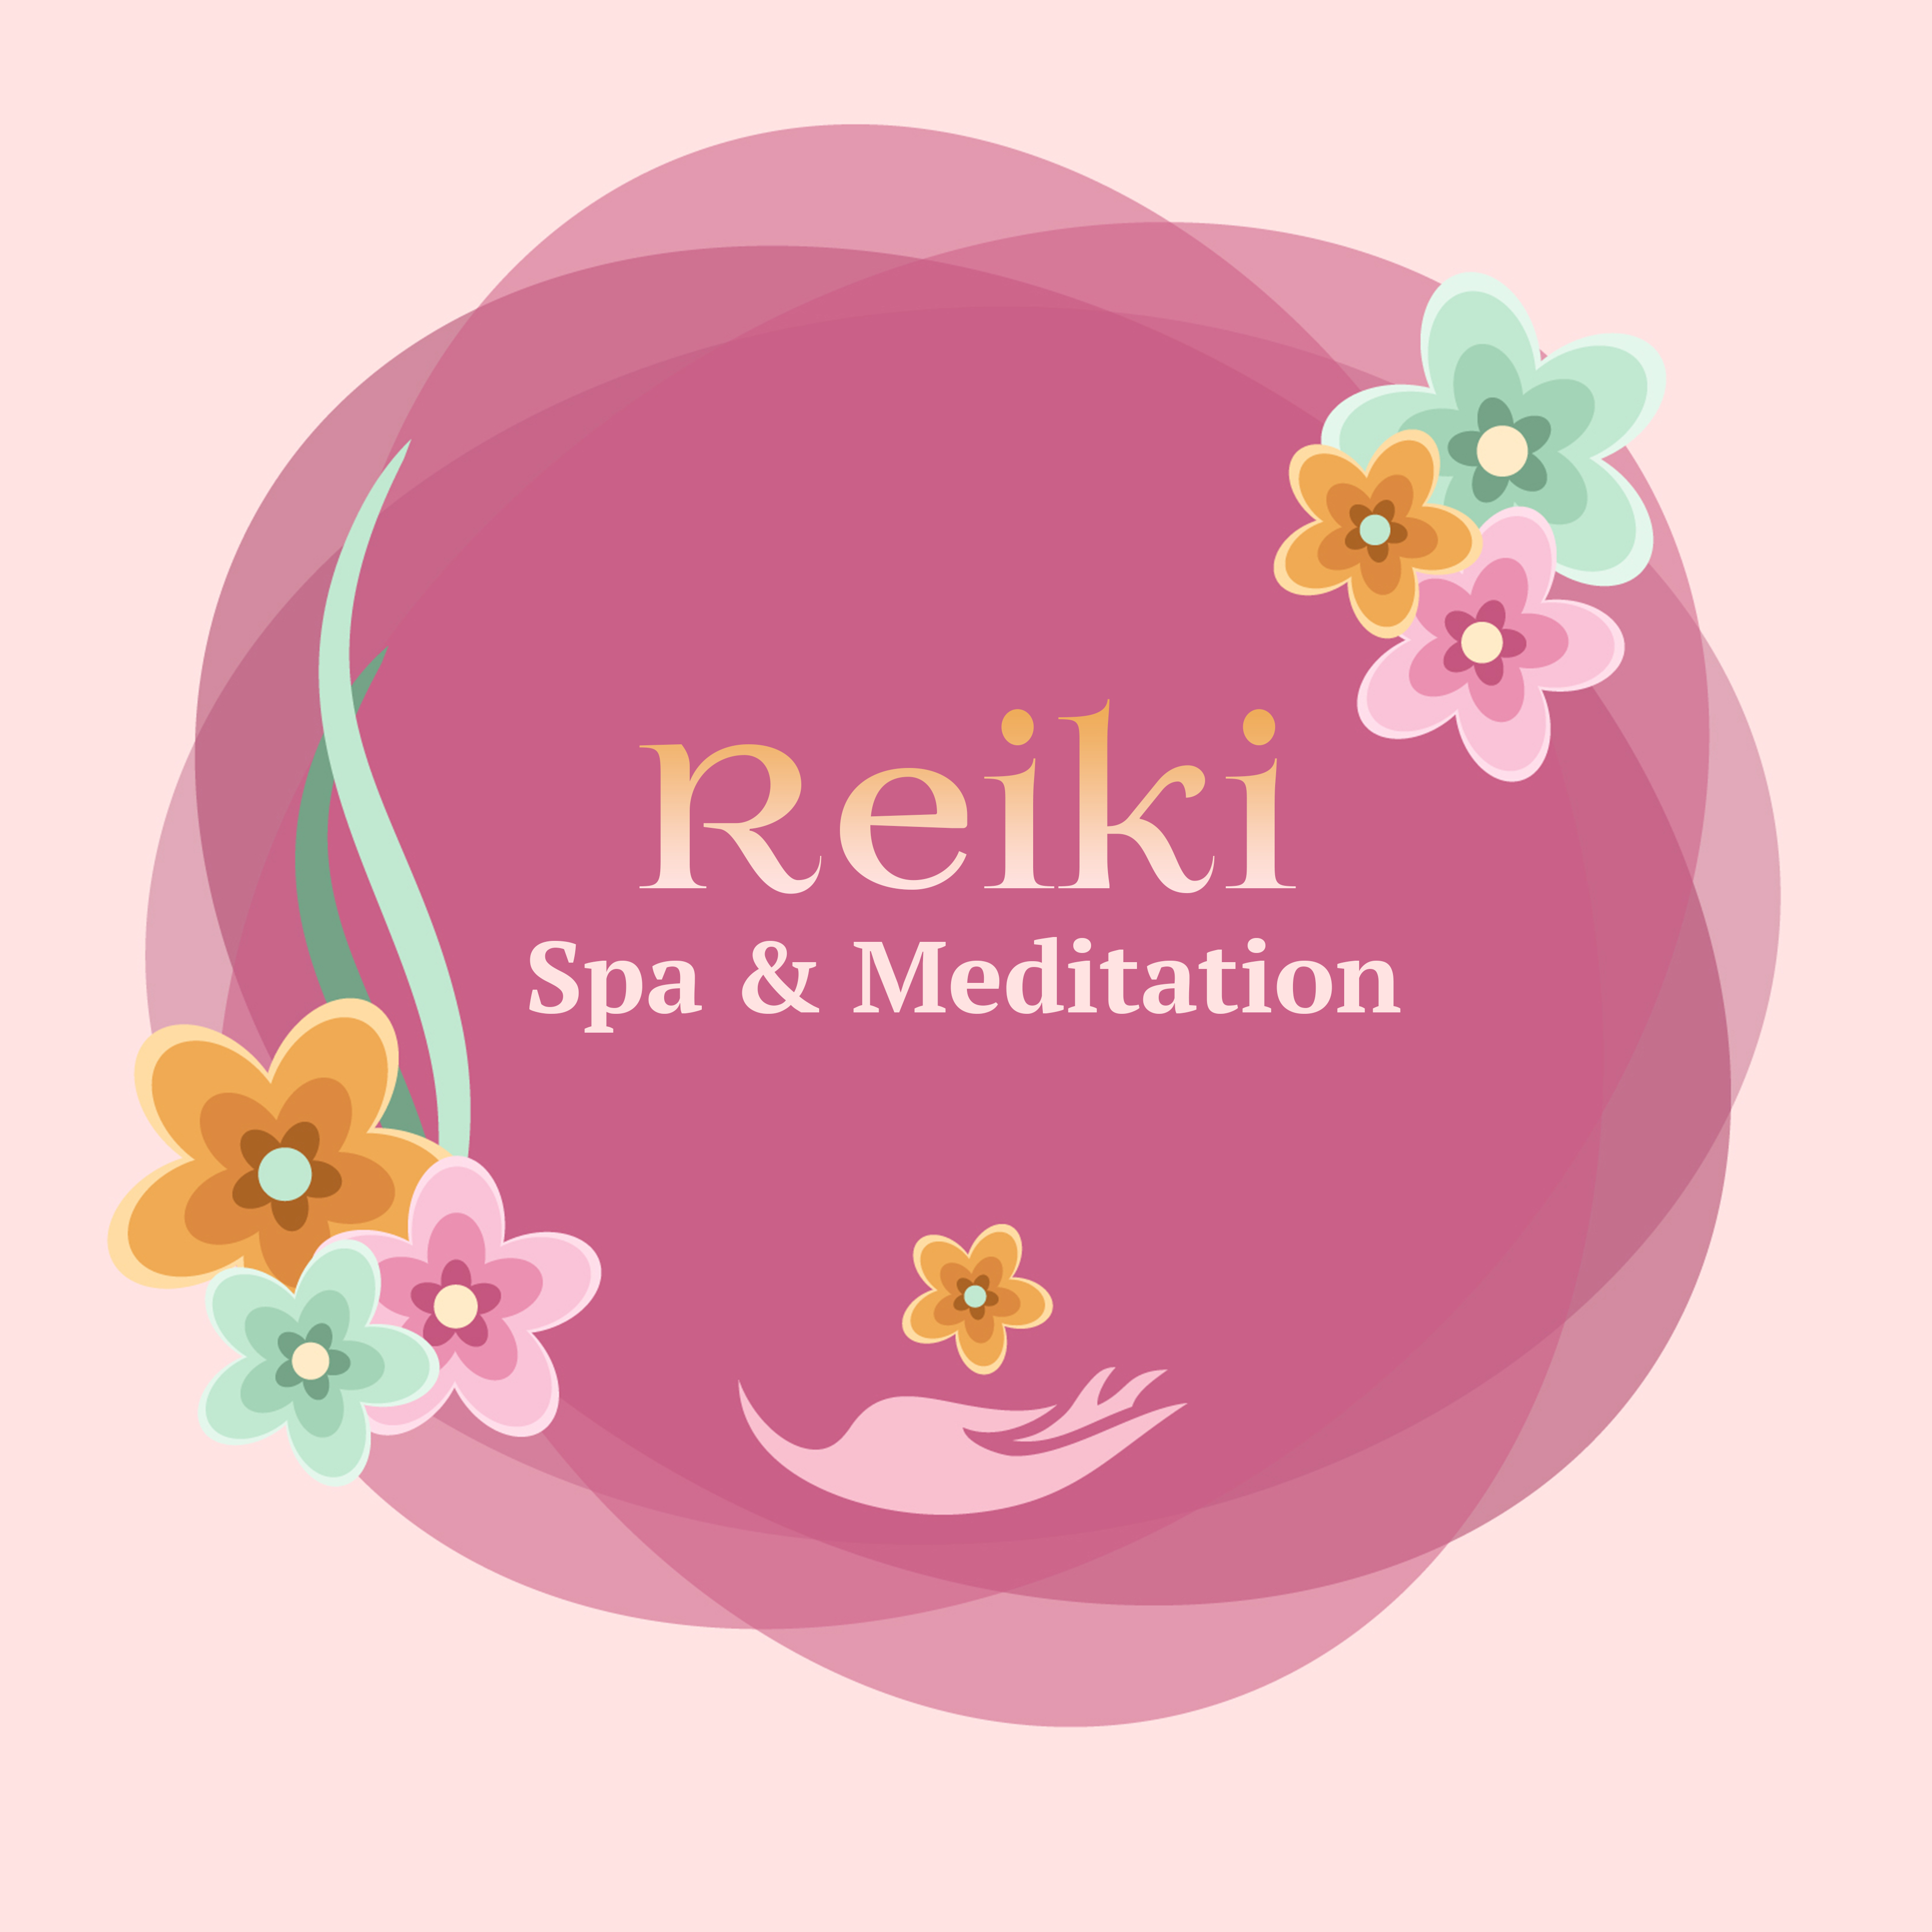 Reiki Spa & Meditation